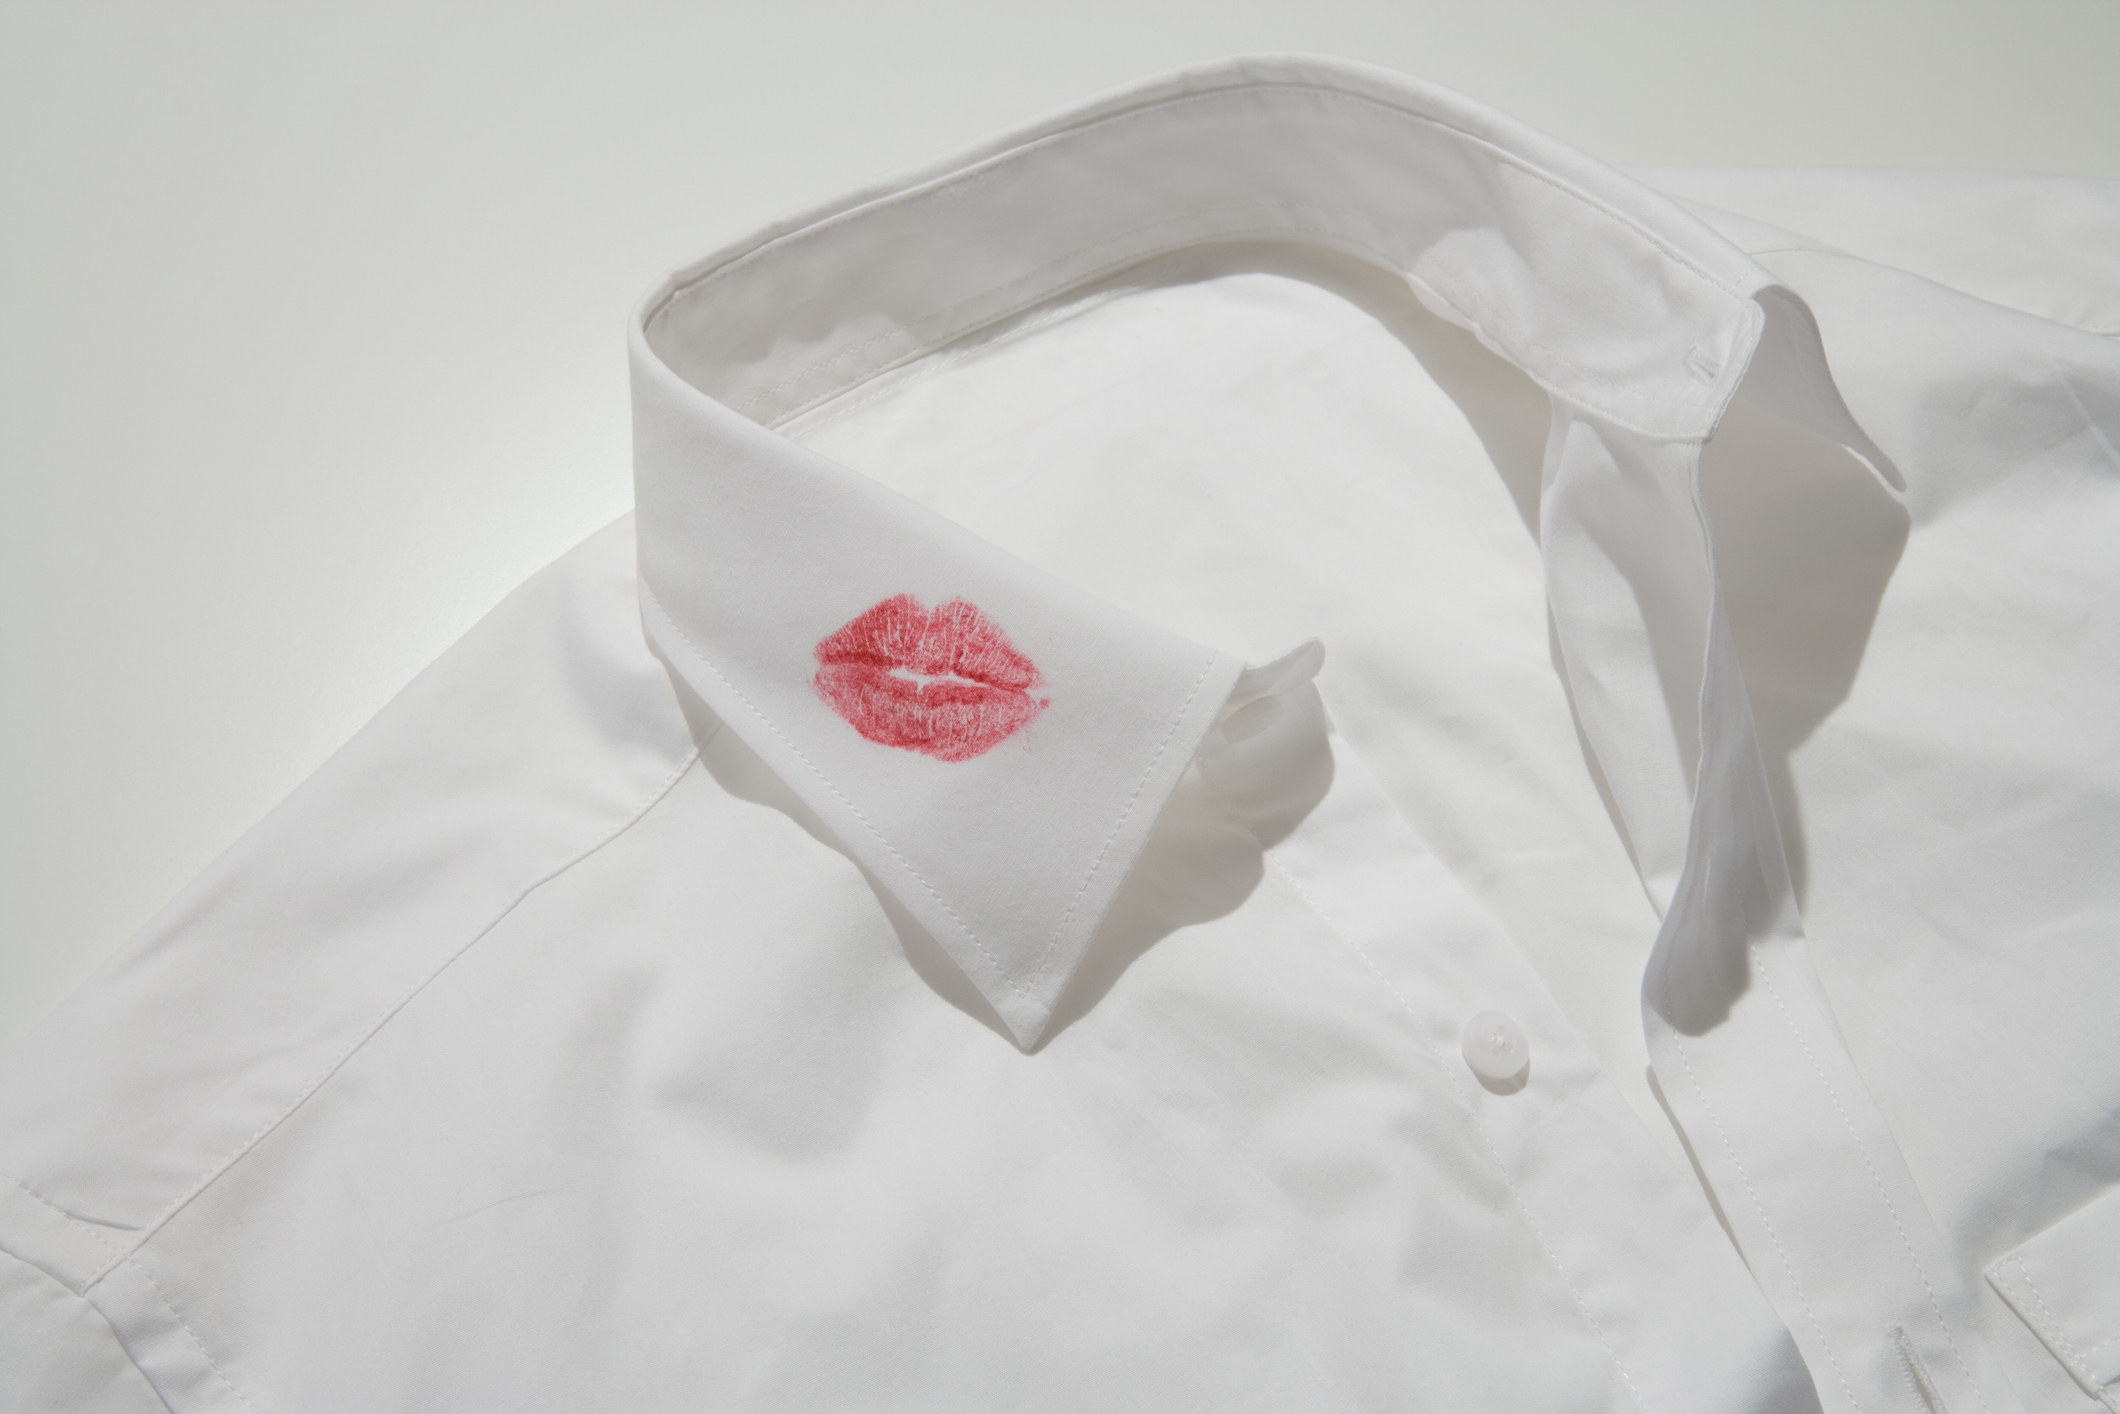 A lipstick kiss on a white shirt